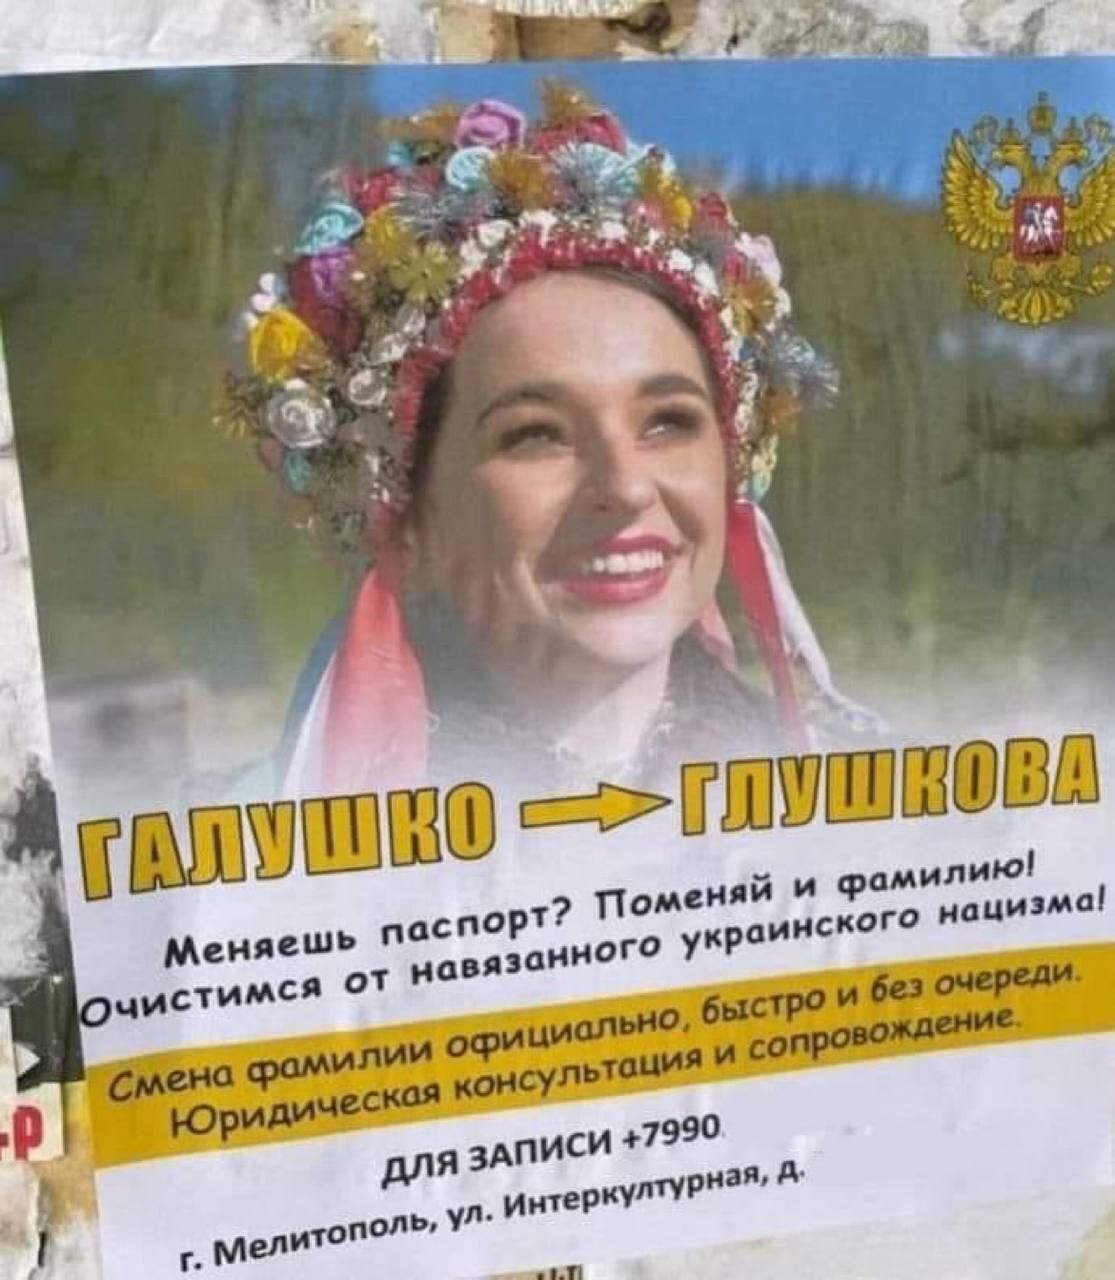 Власти россии пропагандируют русификацию украинских фамилий, используя фото прикарпатской певицы FIINKА